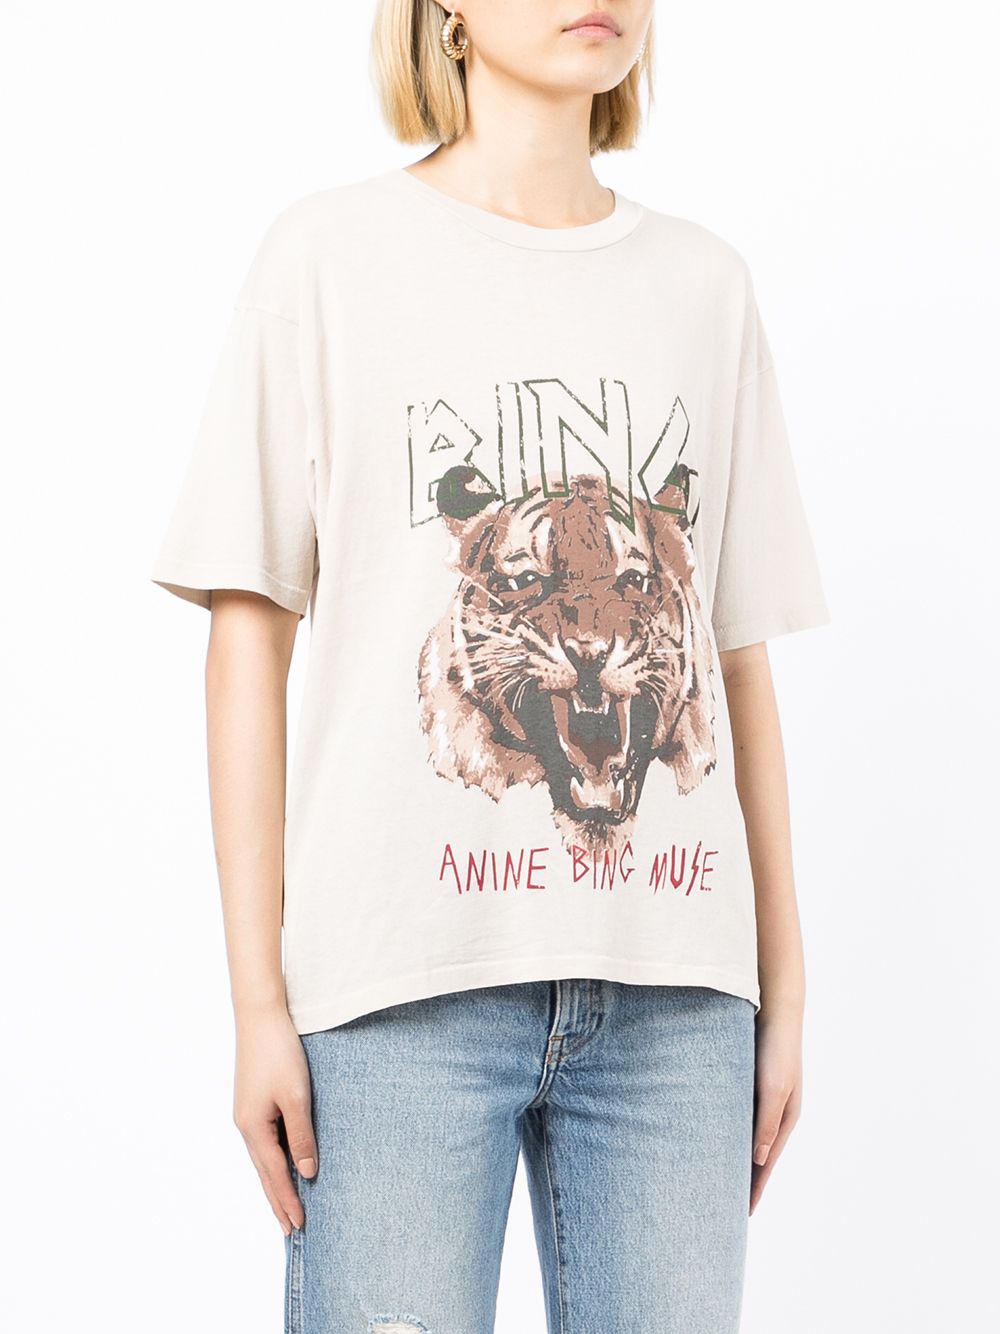 фото Anine bing футболка из органического хлопка с принтом tiger